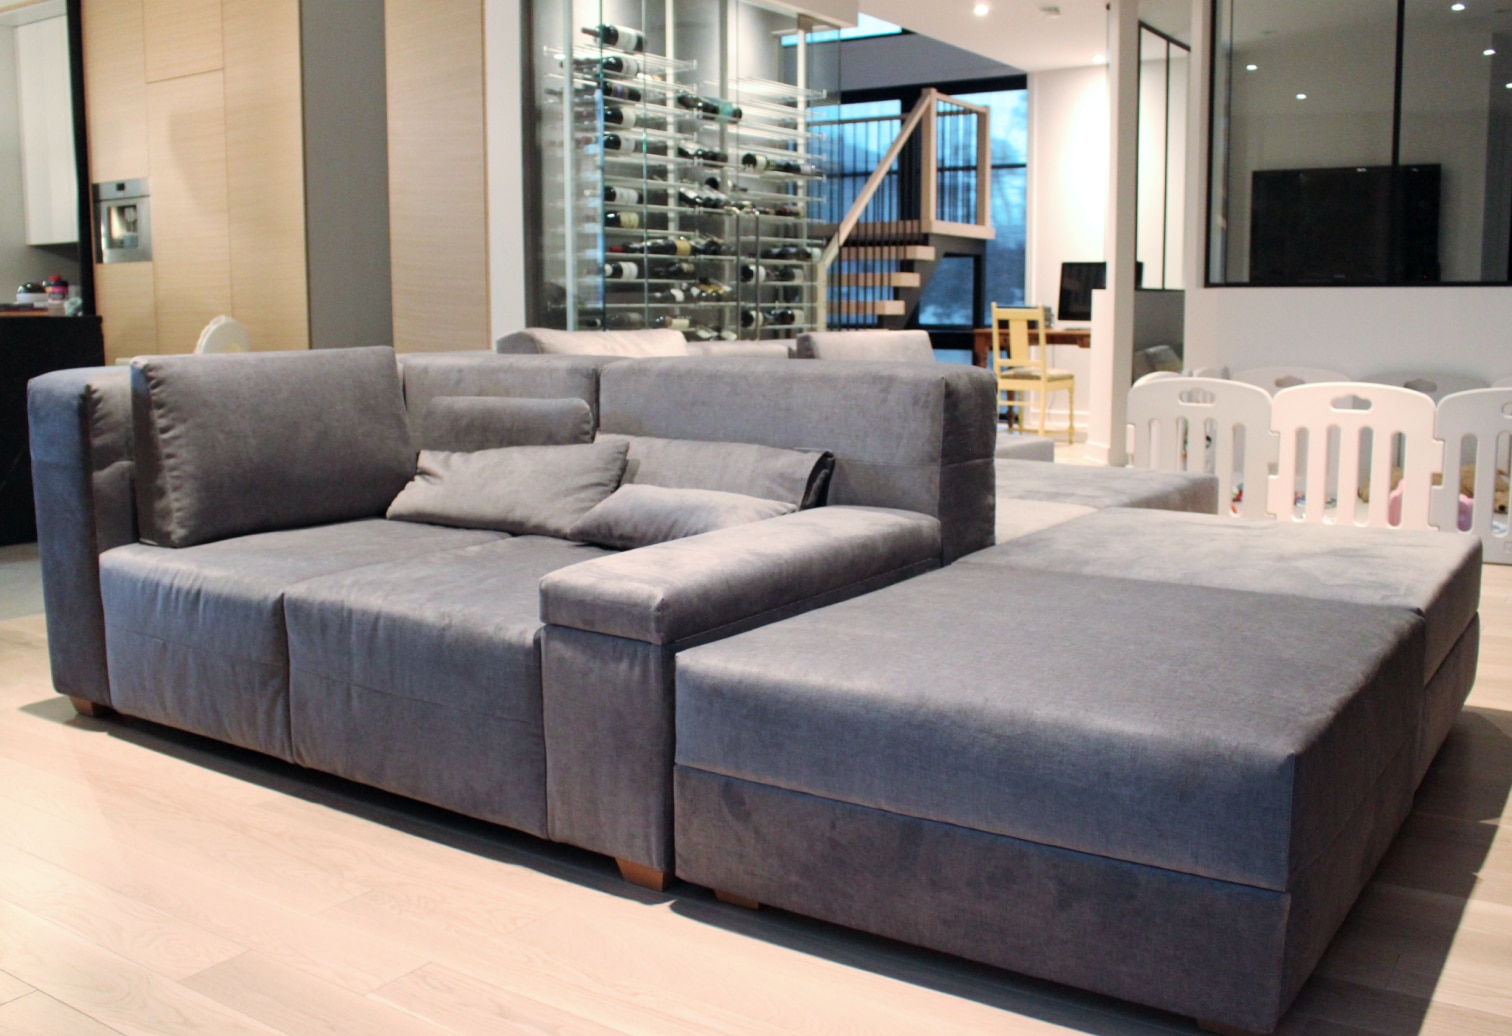 double sided sofa Sectional Bespoke Custom Made velvet covered